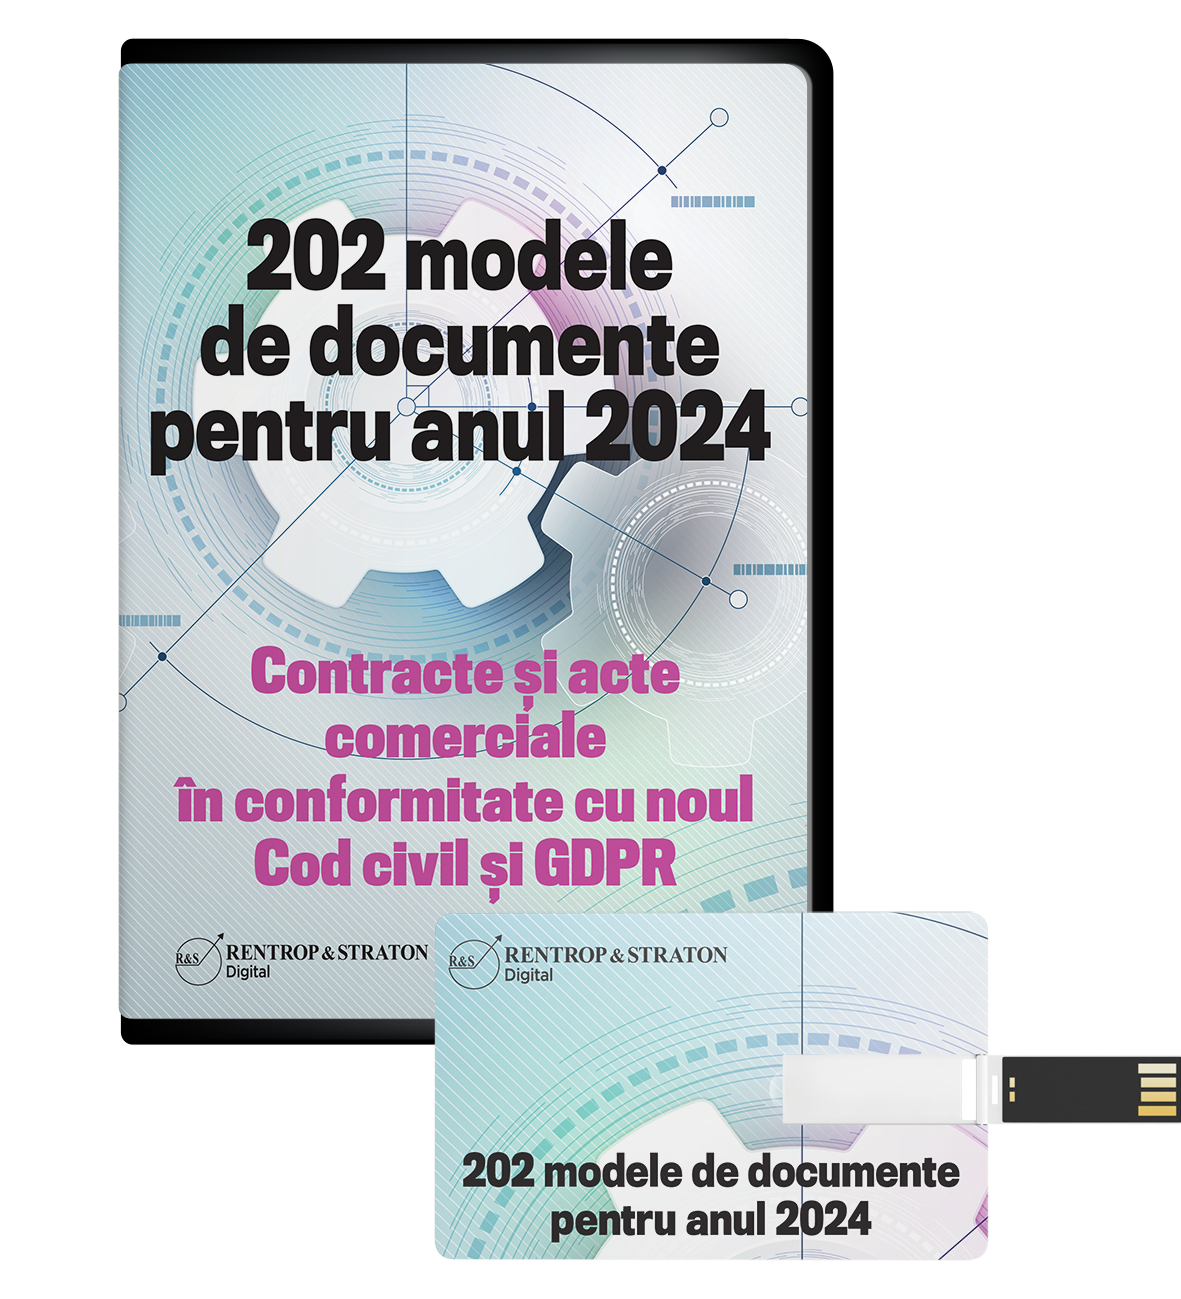 202 modele de documente pentru anul 2022